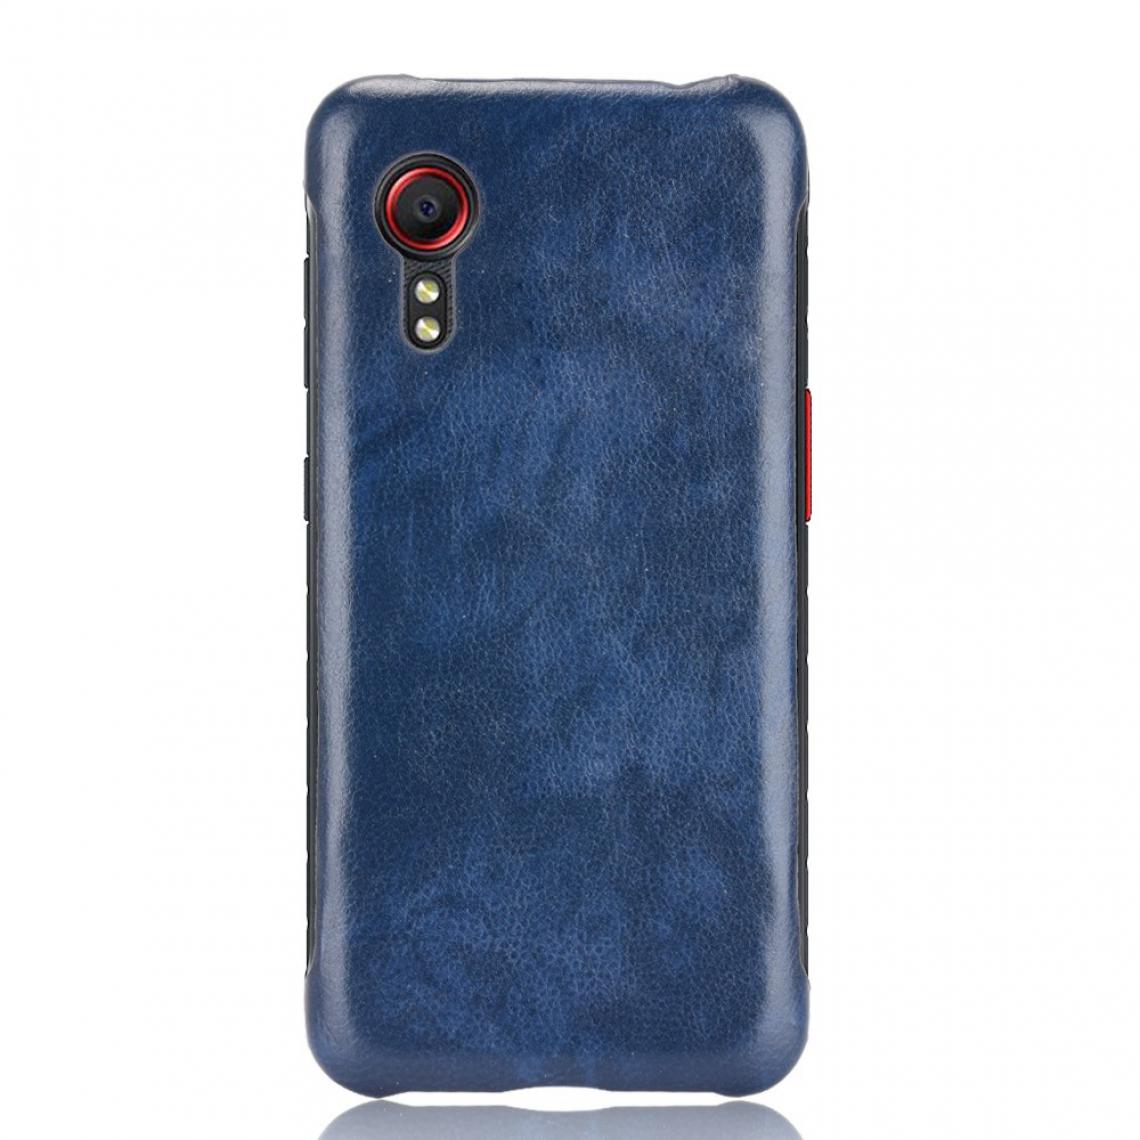 Other - Coque en TPU + PU Litchi Texture Antichoc Enduit bleu pour votre Samsung Galaxy Xcover 5 - Coque, étui smartphone